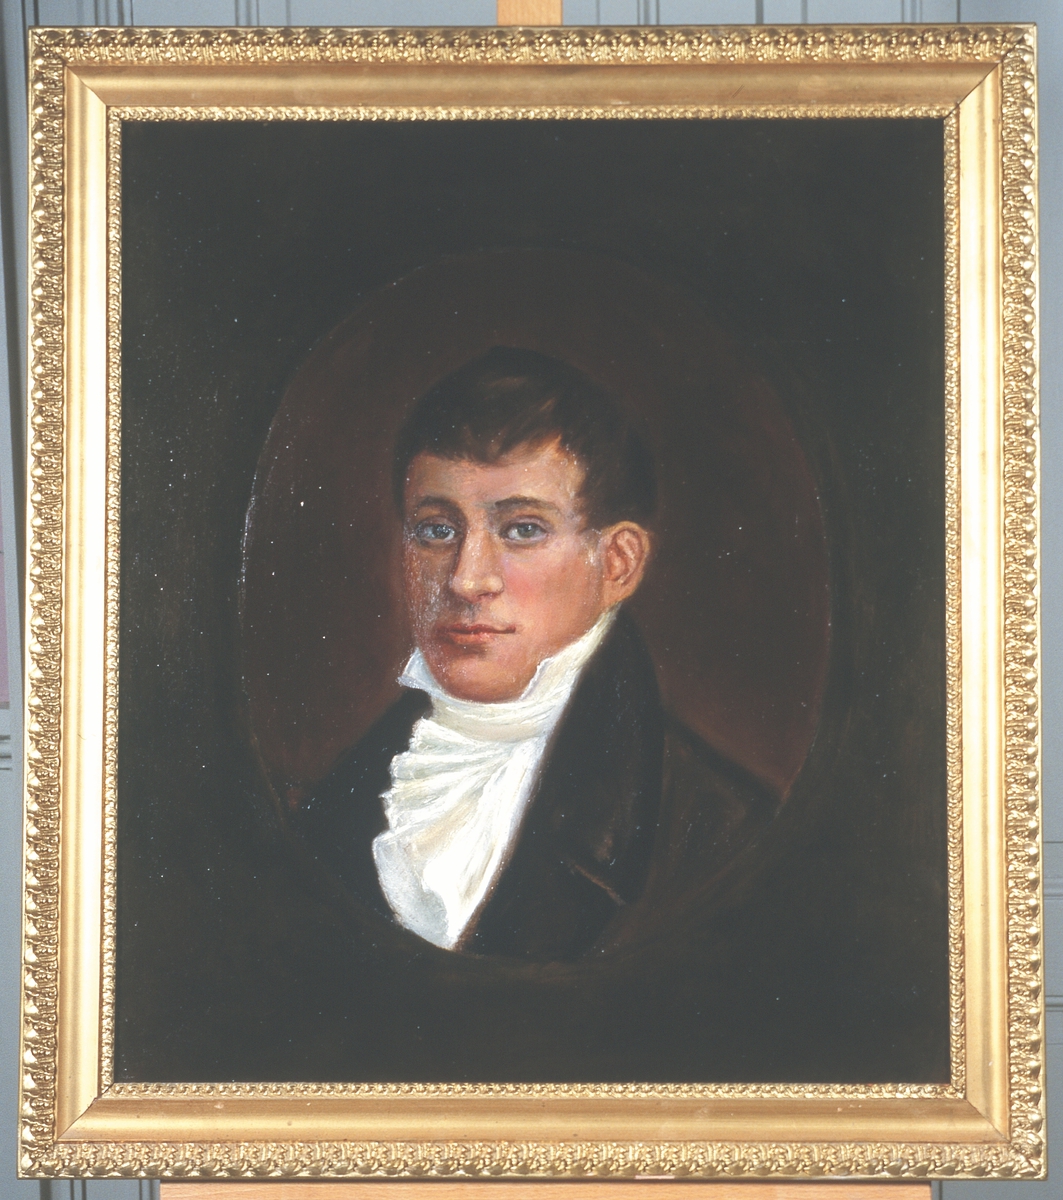 Portrett av eidsvollsmann Christopher F. Omsen.
Mann med kort, mørkt hår, mørk kledning og hvit skjorte med hvitt halsbind, kalvekryss
Innskrevet i oval.